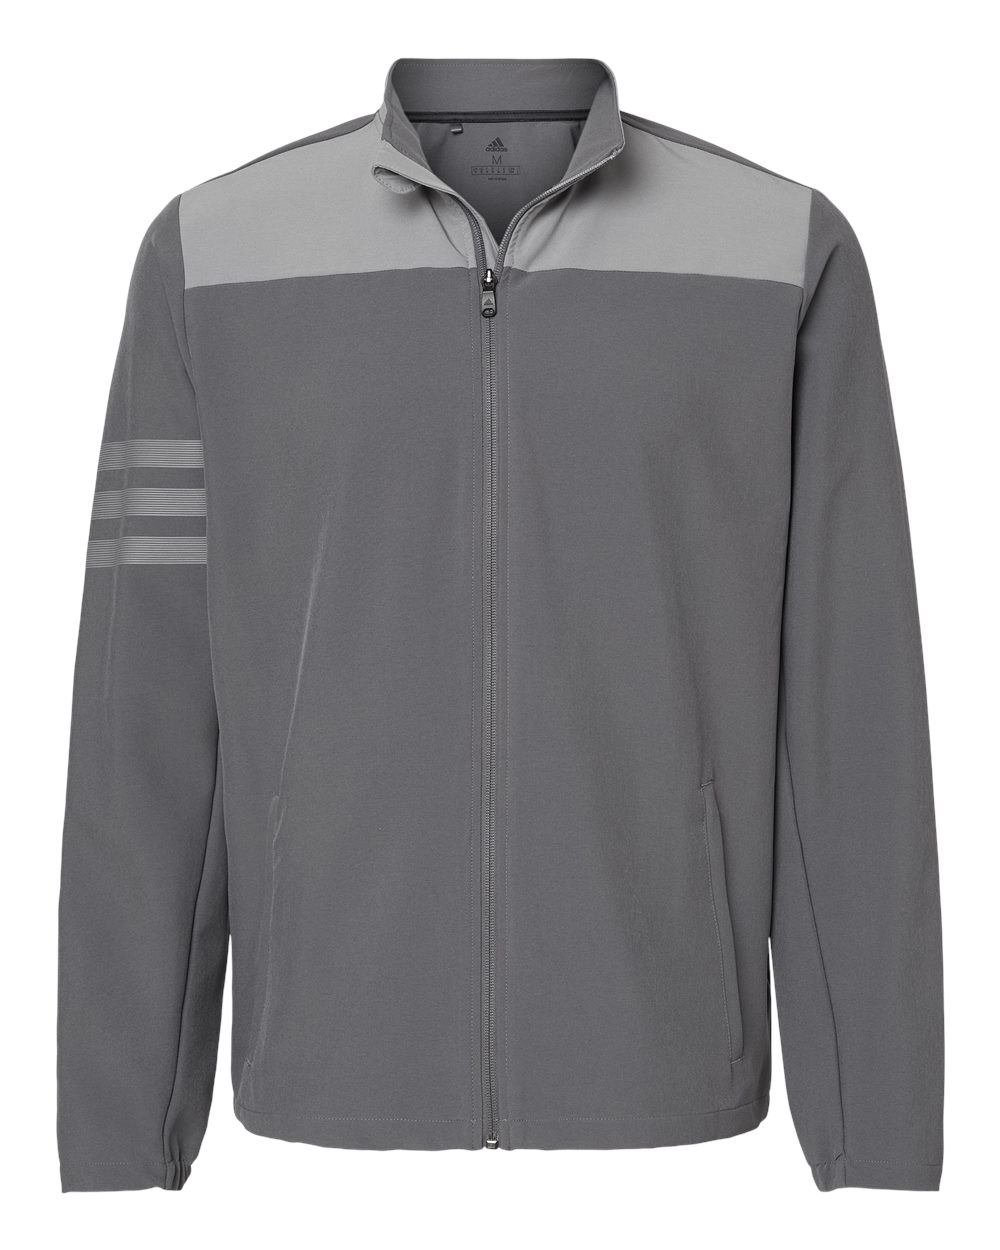 Adidas Mens 3-Stripes Jacket Coat Windbreaker Pockets A267 up to 4XL | eBay